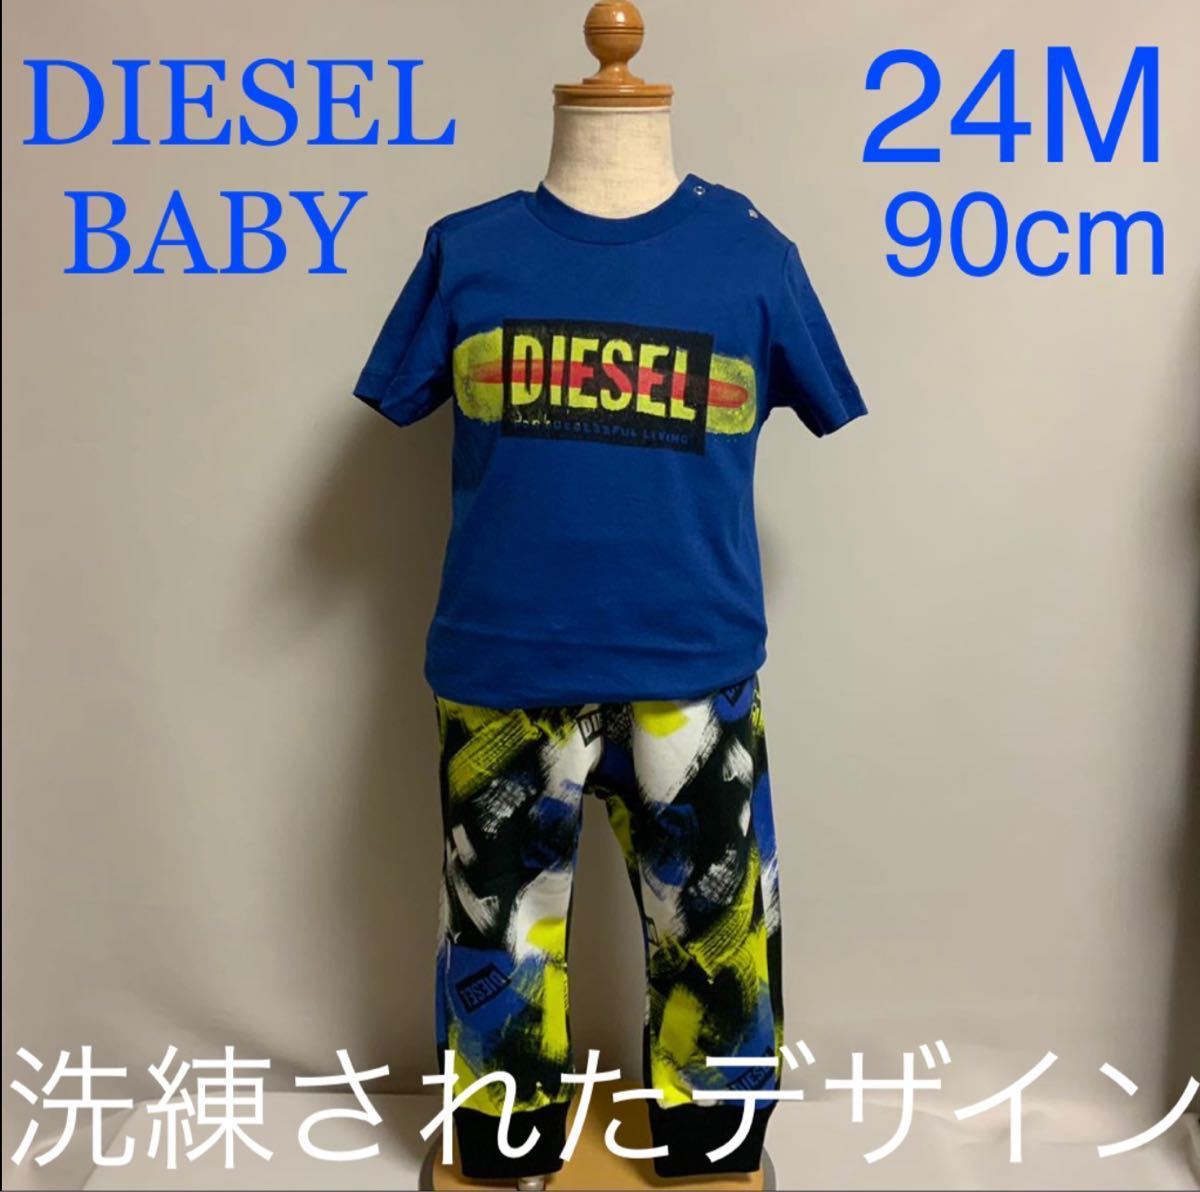 洗練されたデザイン DIESEL ①Tシャツ②スウェット 2点セット 12M